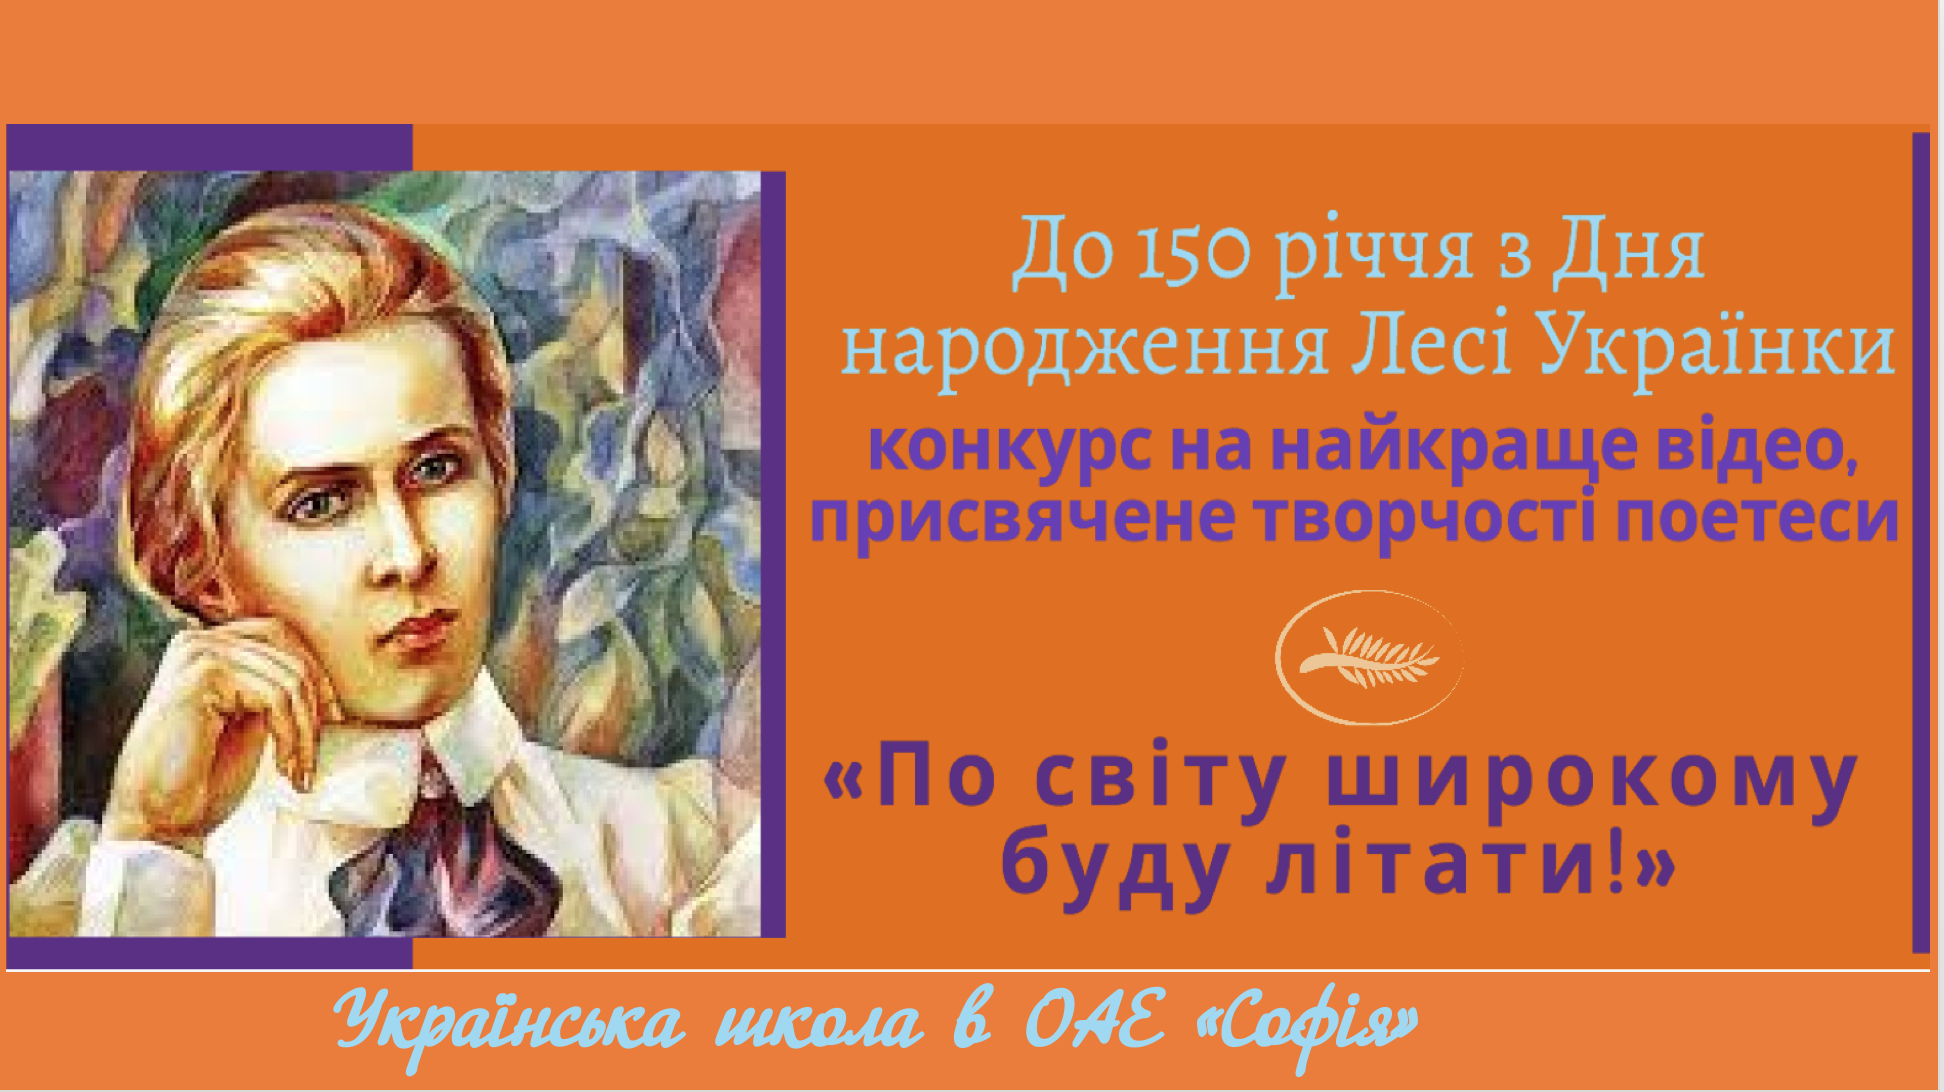 Конкурс на найкраще відео «По світу широкому буду літати!», присвячений святкуванню 150-річчя з Дня народження Лесі Українки.